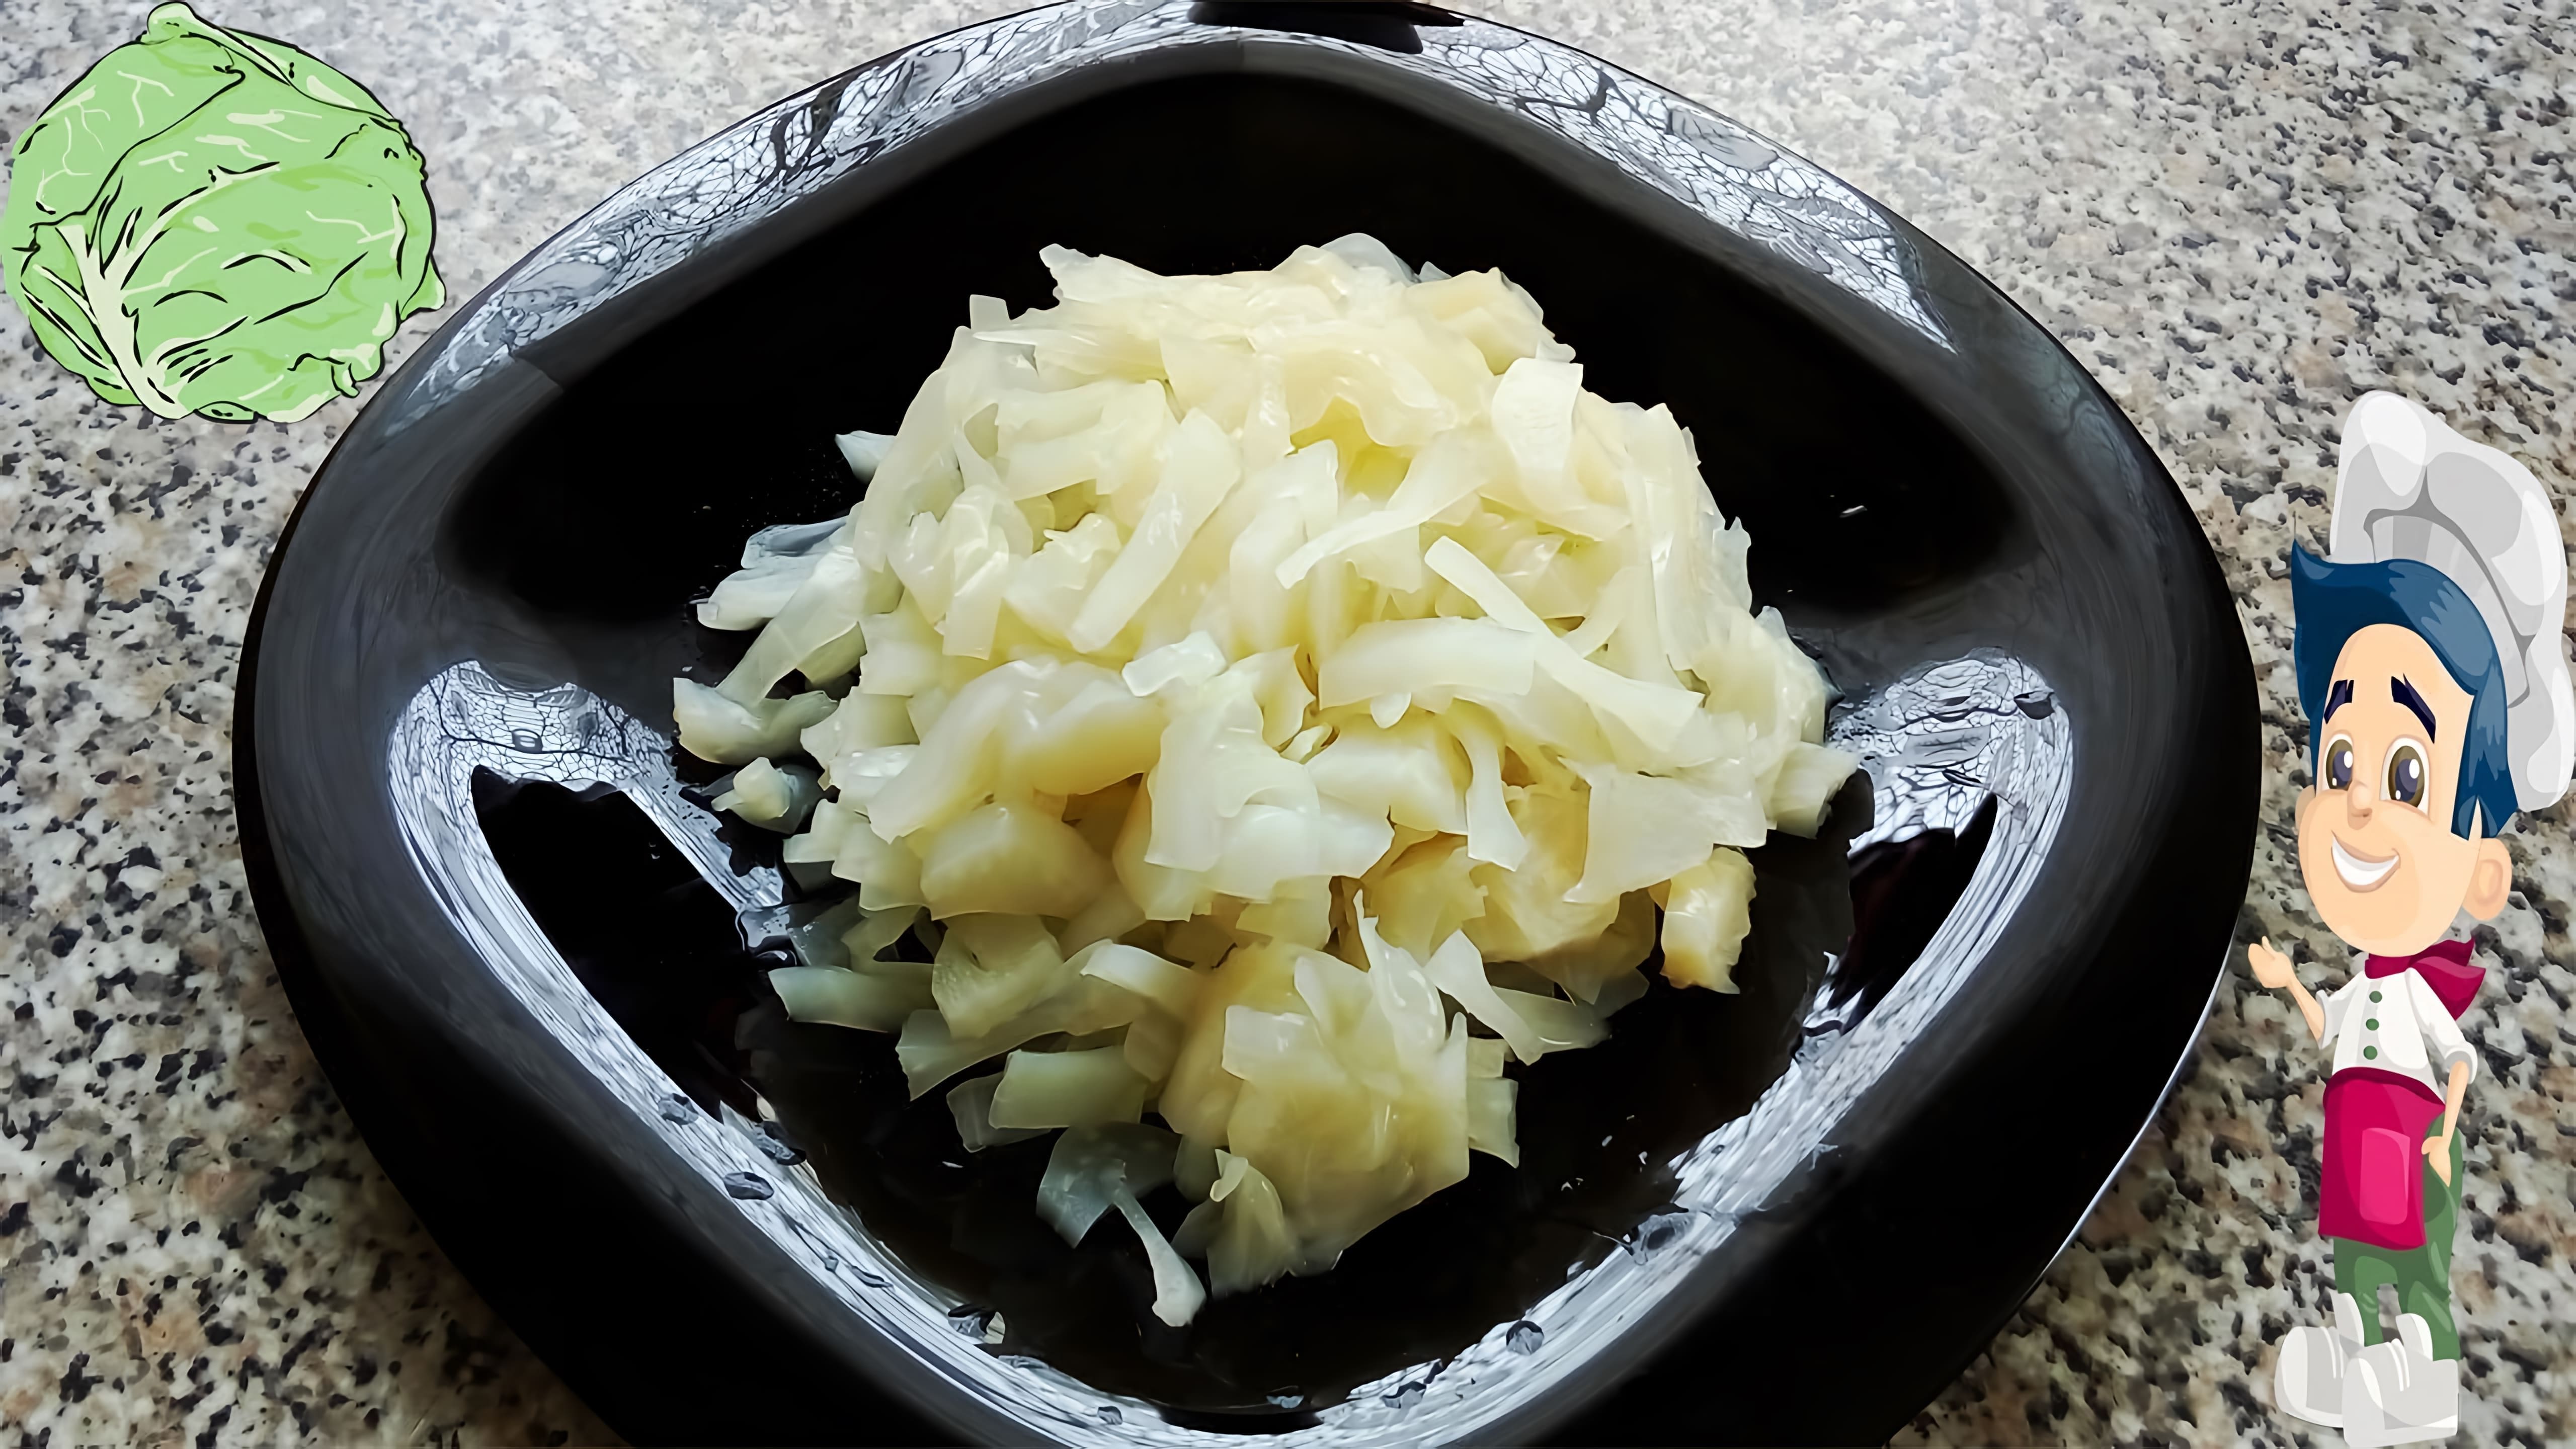 В этом видео демонстрируется рецепт приготовления вкусной маринованной капусты